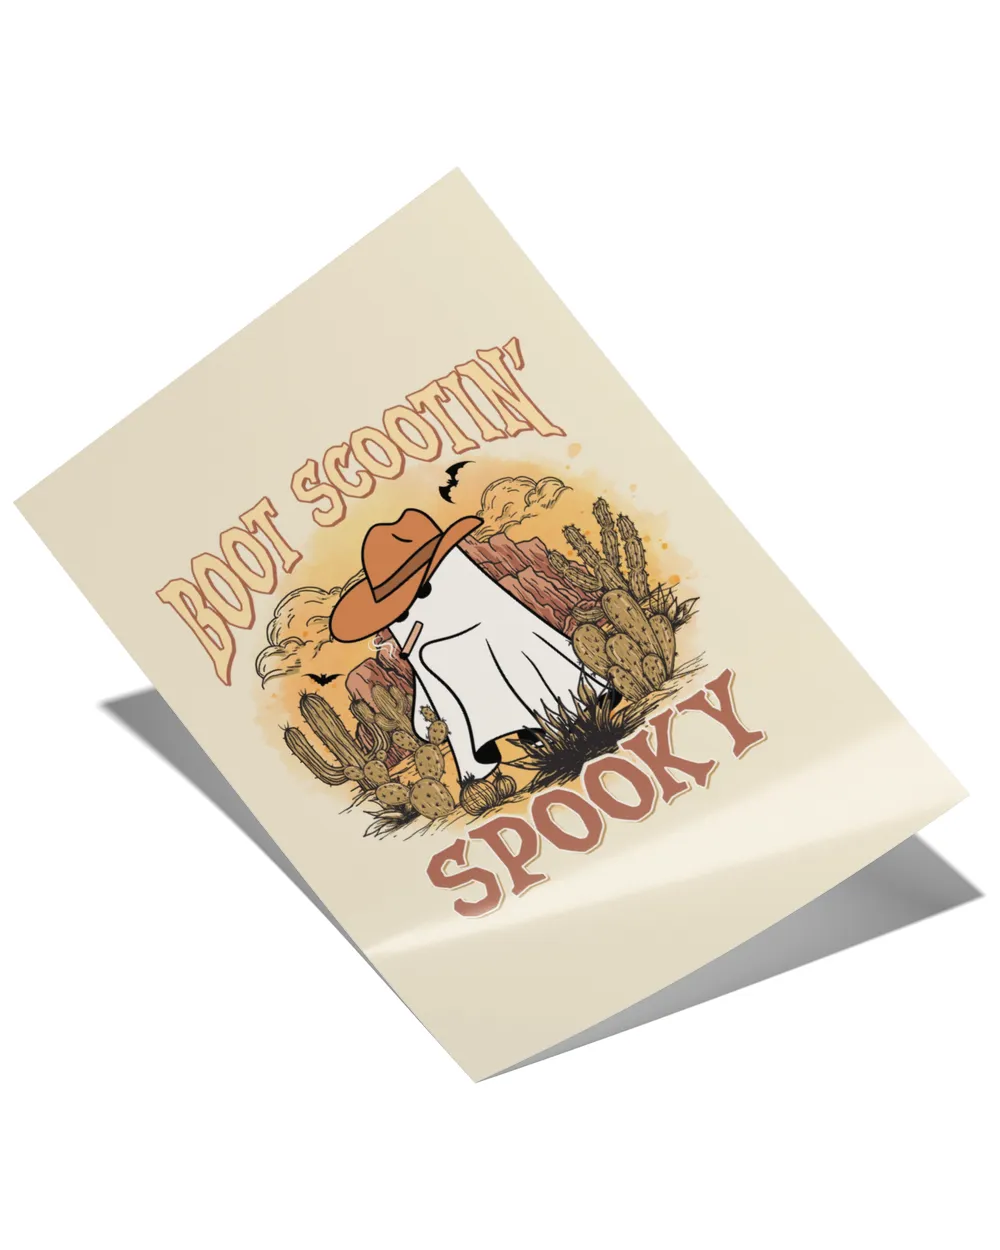 Boot Scootin Spooky Sweatshirt, Hoodie, Tote bag, Canvas